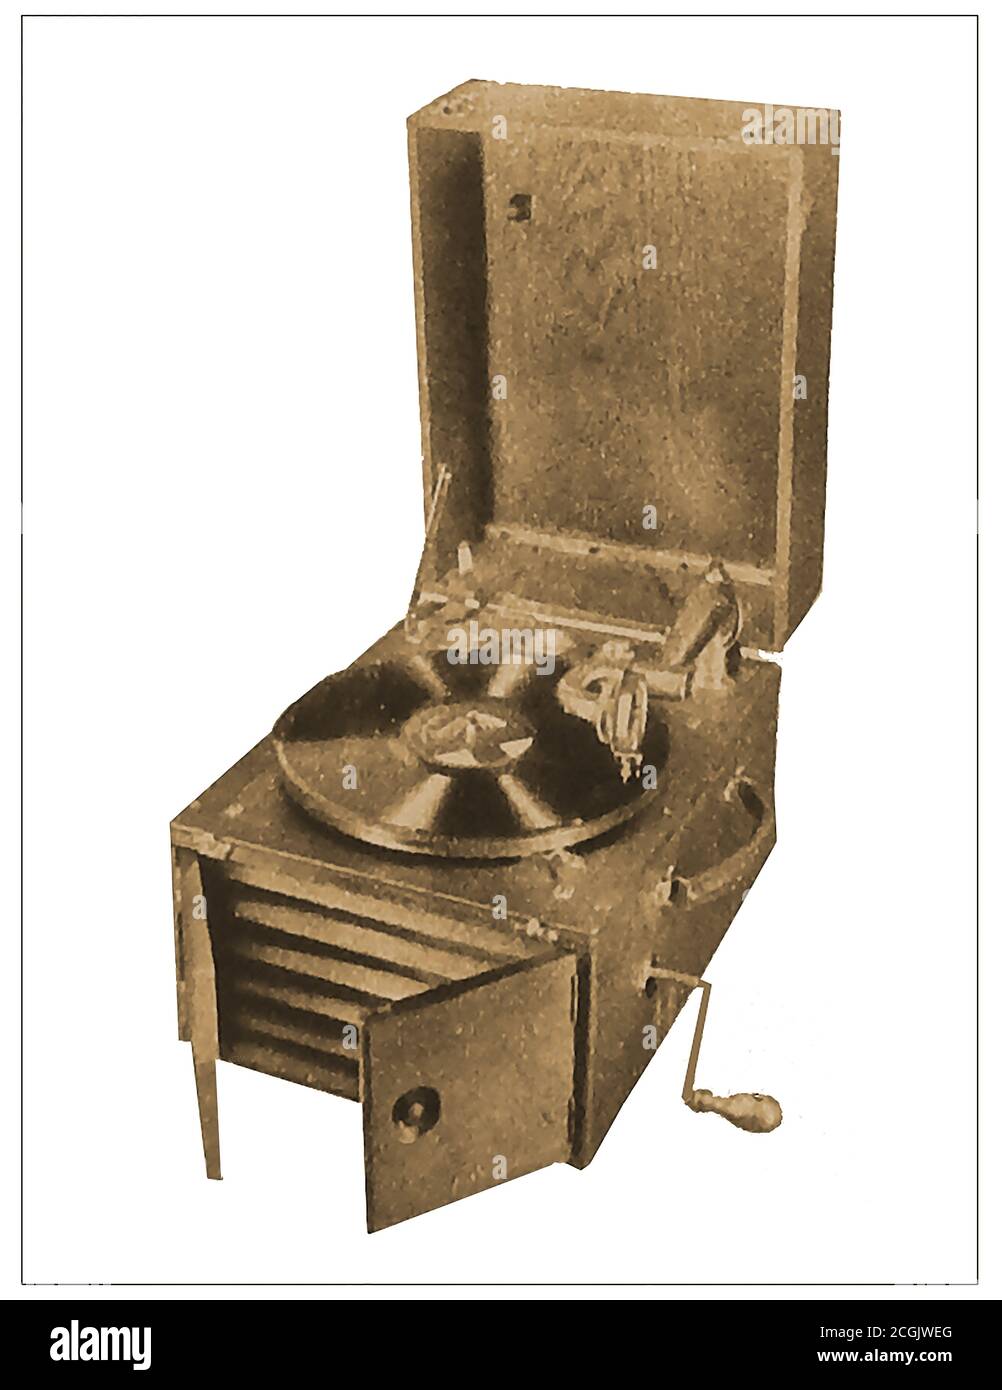 1921 questa Gramophone Company, il gramophone della scatola è generalmente considerato la prima macchina portatile di gioco di record del relativo genere. La UK Gramophone Company Limited (The Gramophone Co. Ltd.) è stata fondata da agenti di Emil Berliner (William Barry Owen e Edmund Trevor Lloyd Wynne Williams) ed è stata una delle prime società di registrazione + l'organizzazione madre per l'etichetta "His Master's Voice" (HMV), Così come l'affiliato europeo della American Victor Talking Machine Company. Successivamente si fuse con la Columbia Graphophone Company nel 1931 per diventare Electric & Musical Industries Limited (EMI) Foto Stock